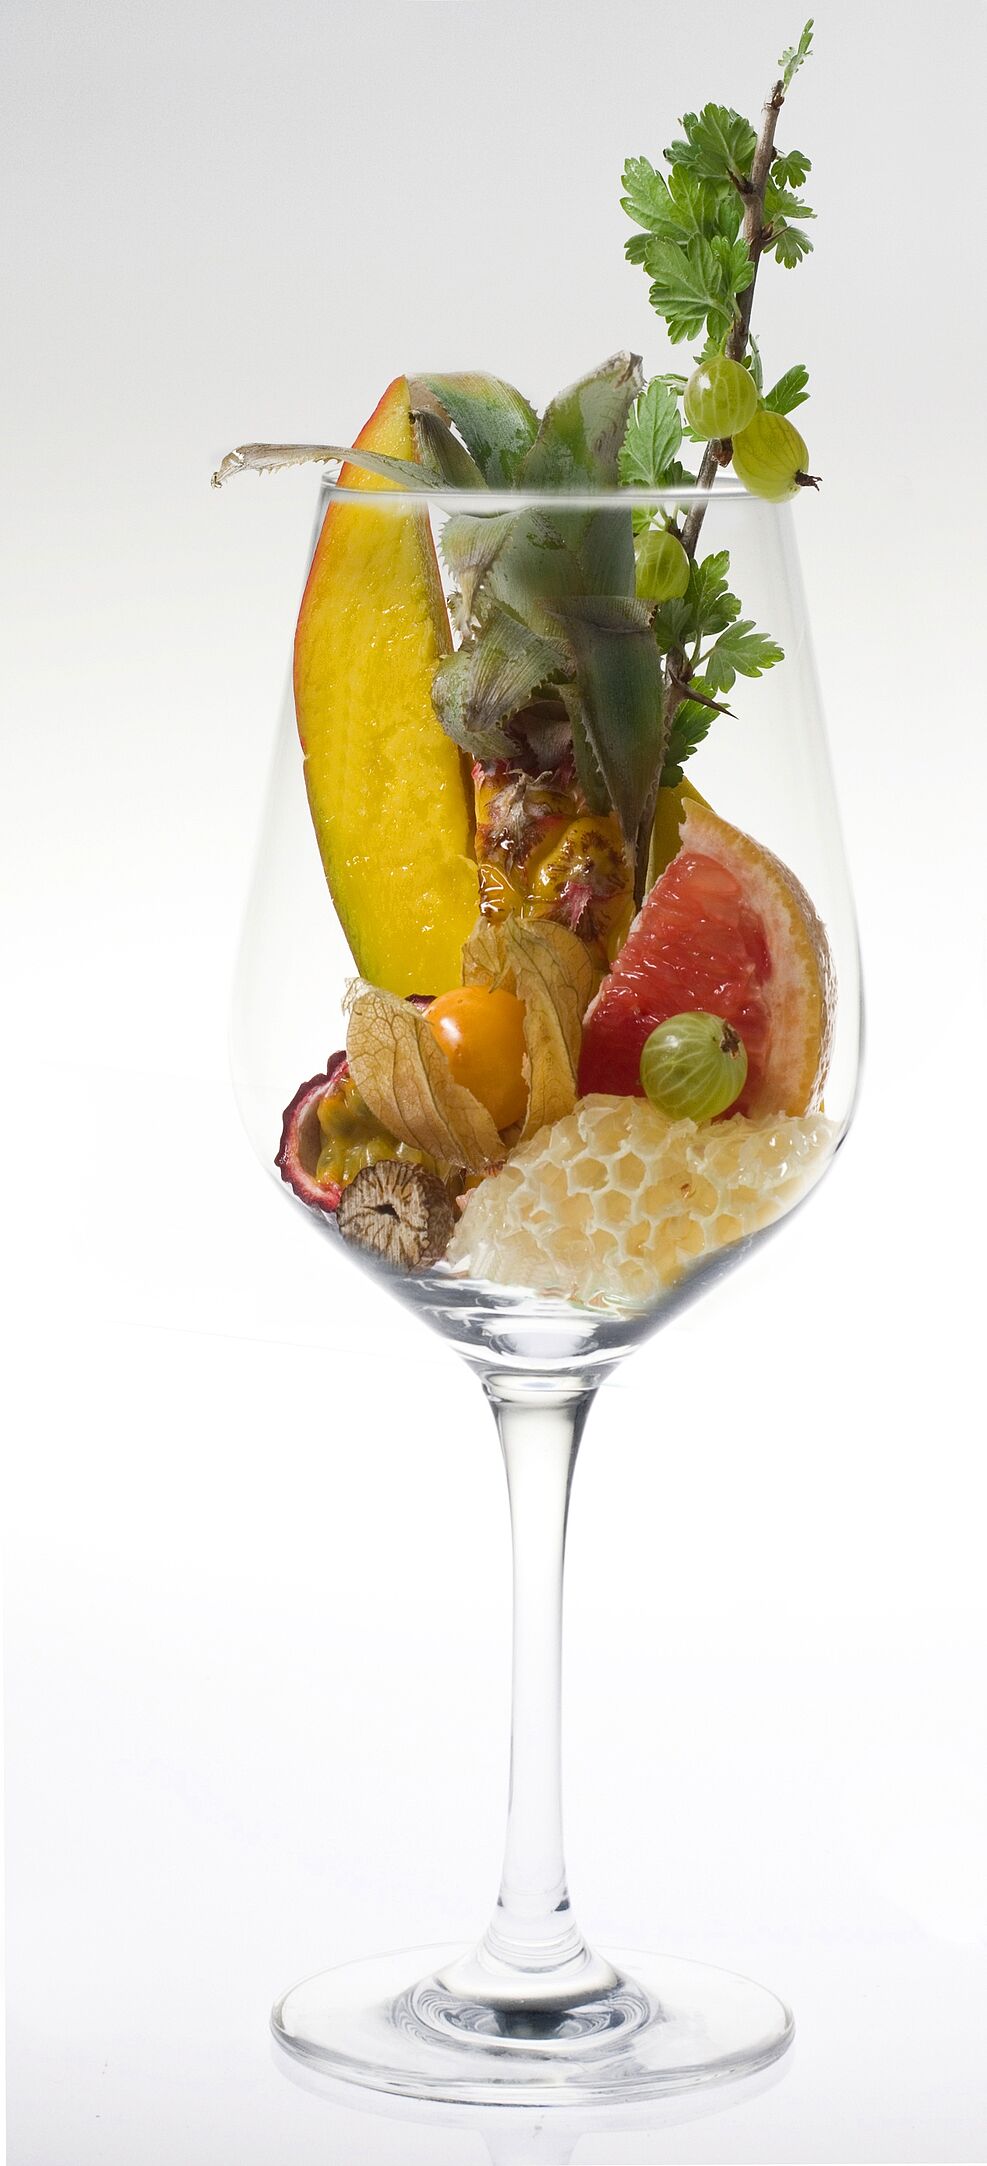 Stückchen von Ananas, Mango, Maracuja, Physalis und Stachelbeere in einem Weinglas symbolisieren das Aromaprofil der Rebsorte Calardis Musqué.